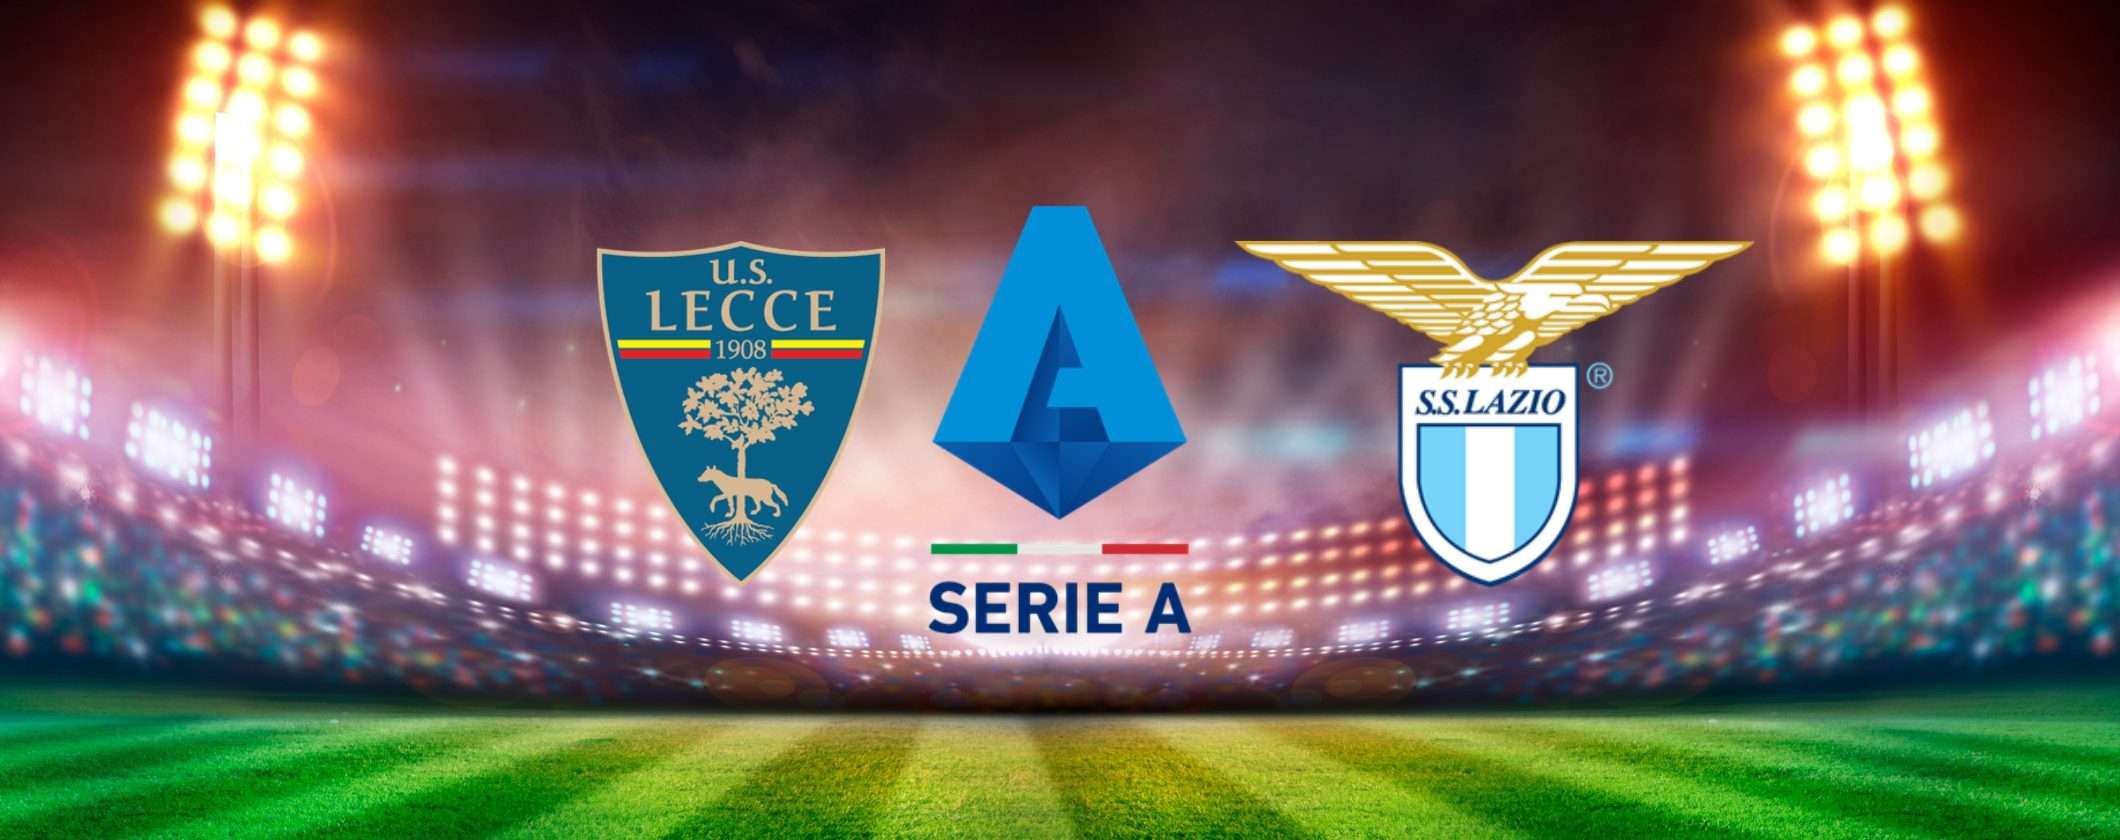 Guarda Lecce-Lazio in streaming anche dall'estero